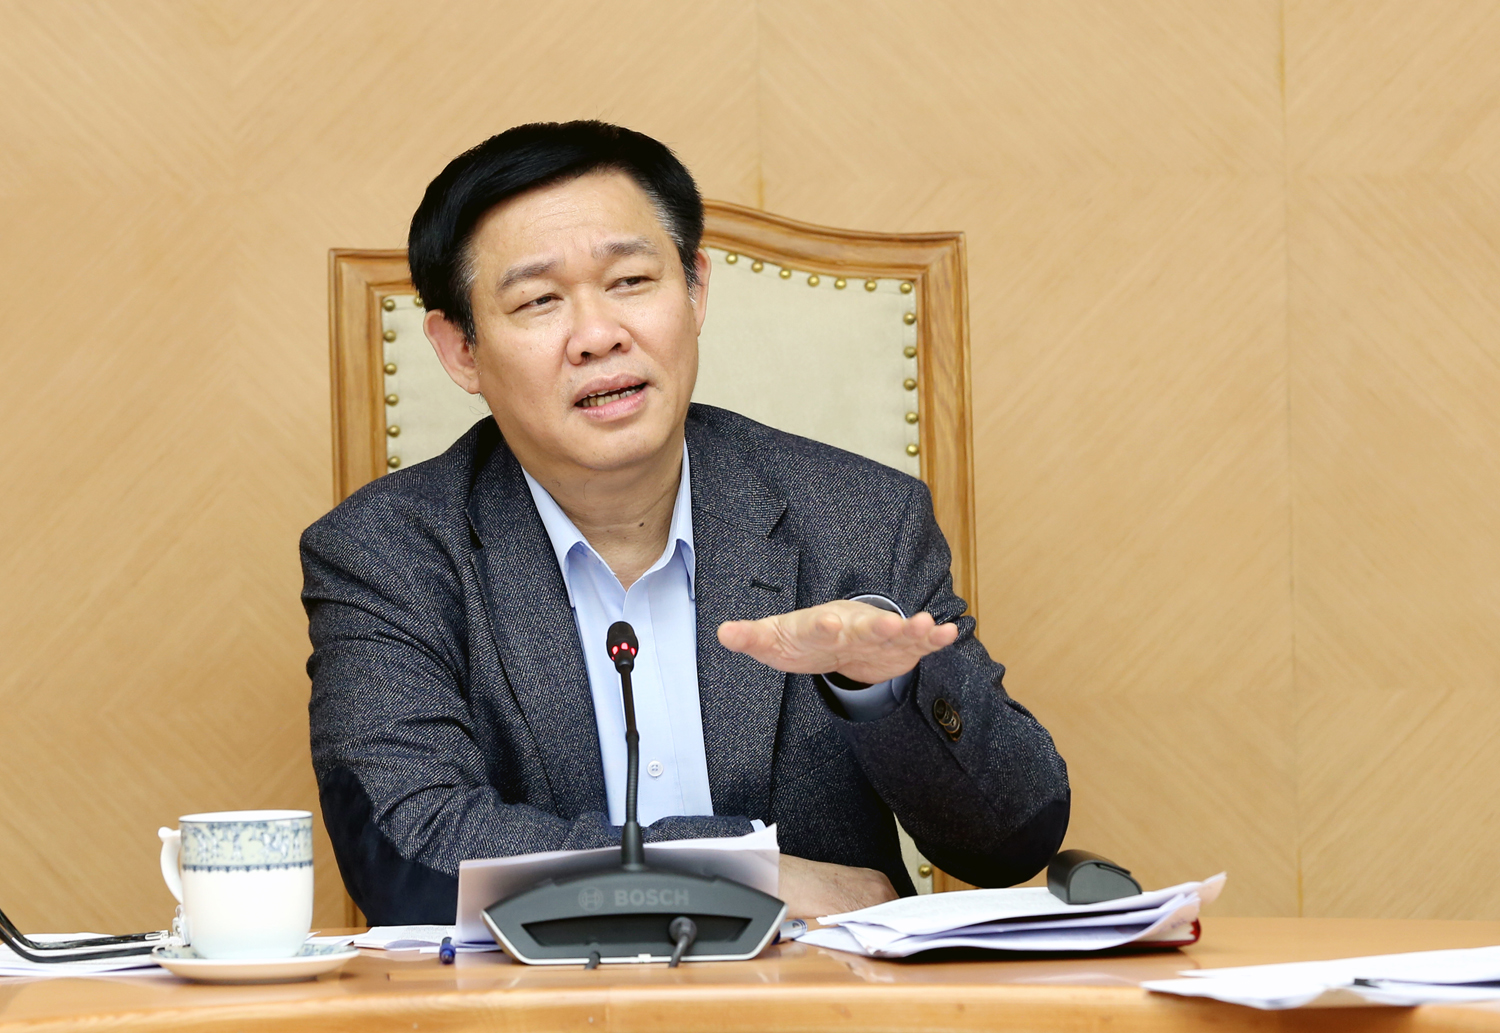 Phó Thủ tướng Vương Đình Huệ chủ trì buổi họp với các bộ, ngành bàn về việc triển khai Nghị quyết số 30/2017/NQ-CP của Chính phủ. Ảnh: VGP/Thành Chung